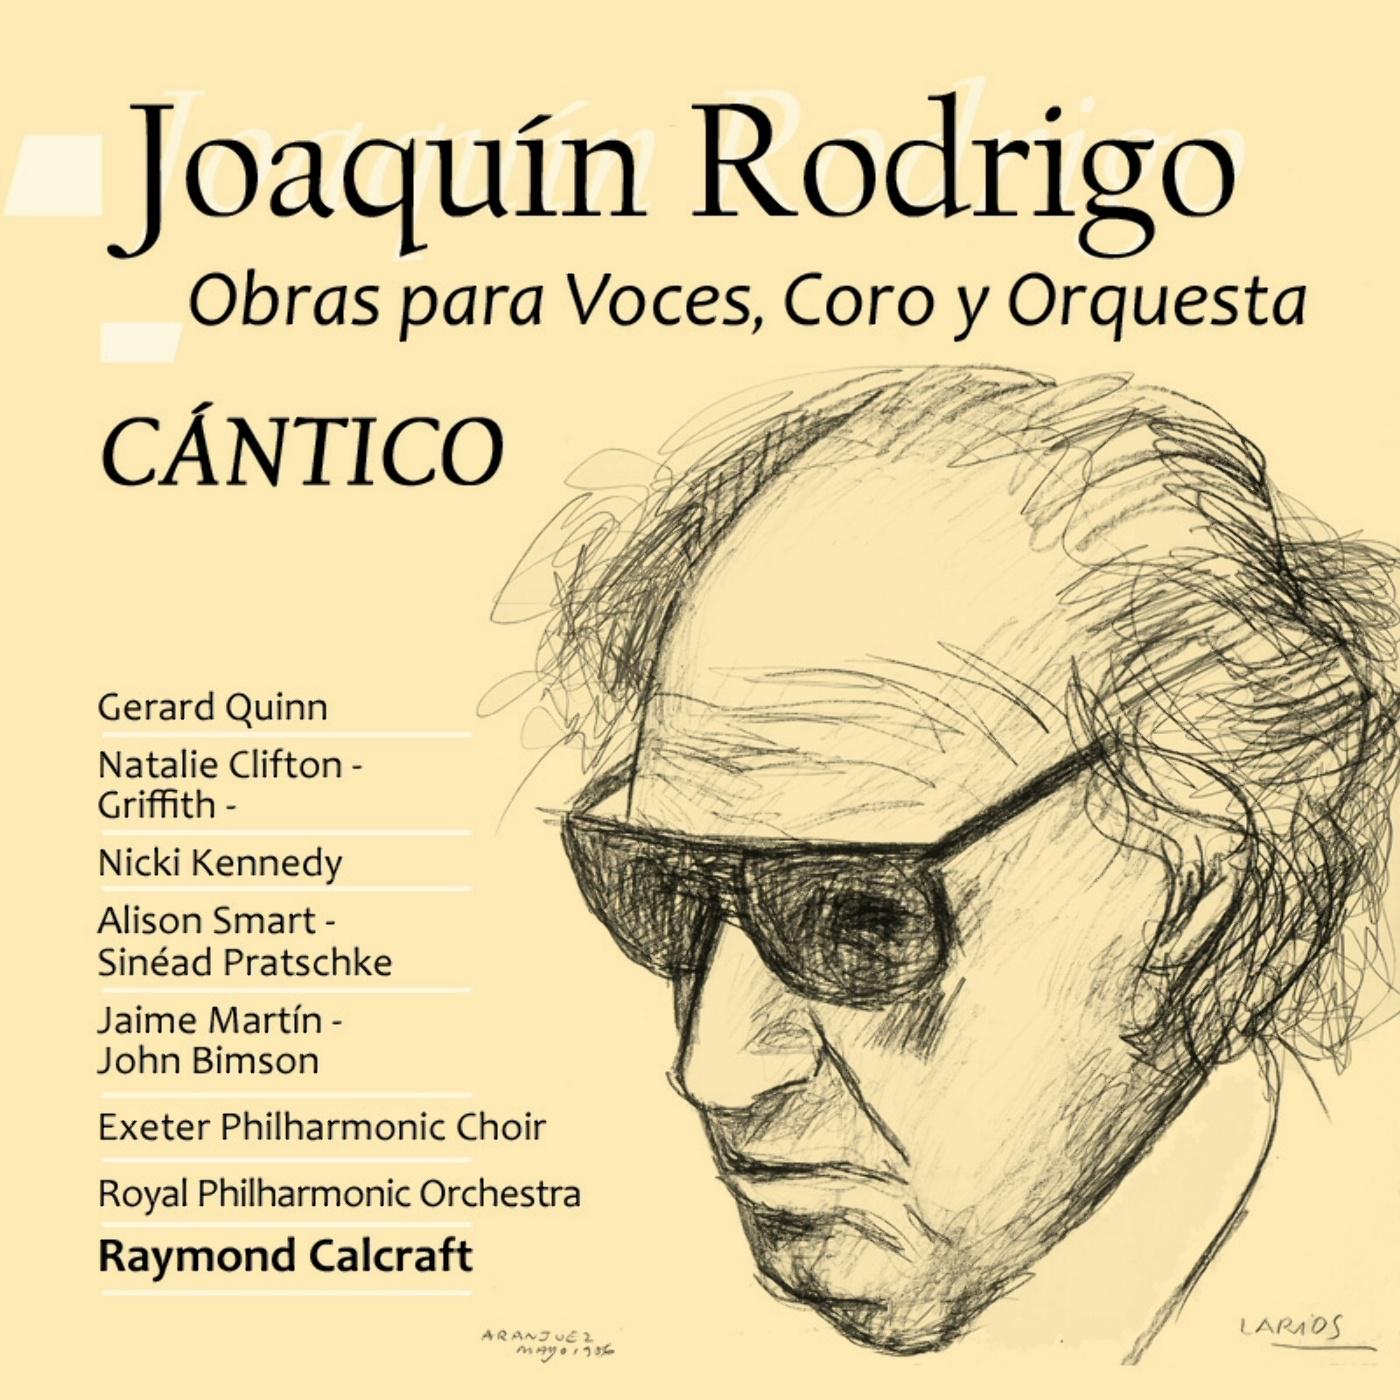 Joaqui n Rodrigo: Obras para Voces, Coro y Orquesta.  Ca ntico